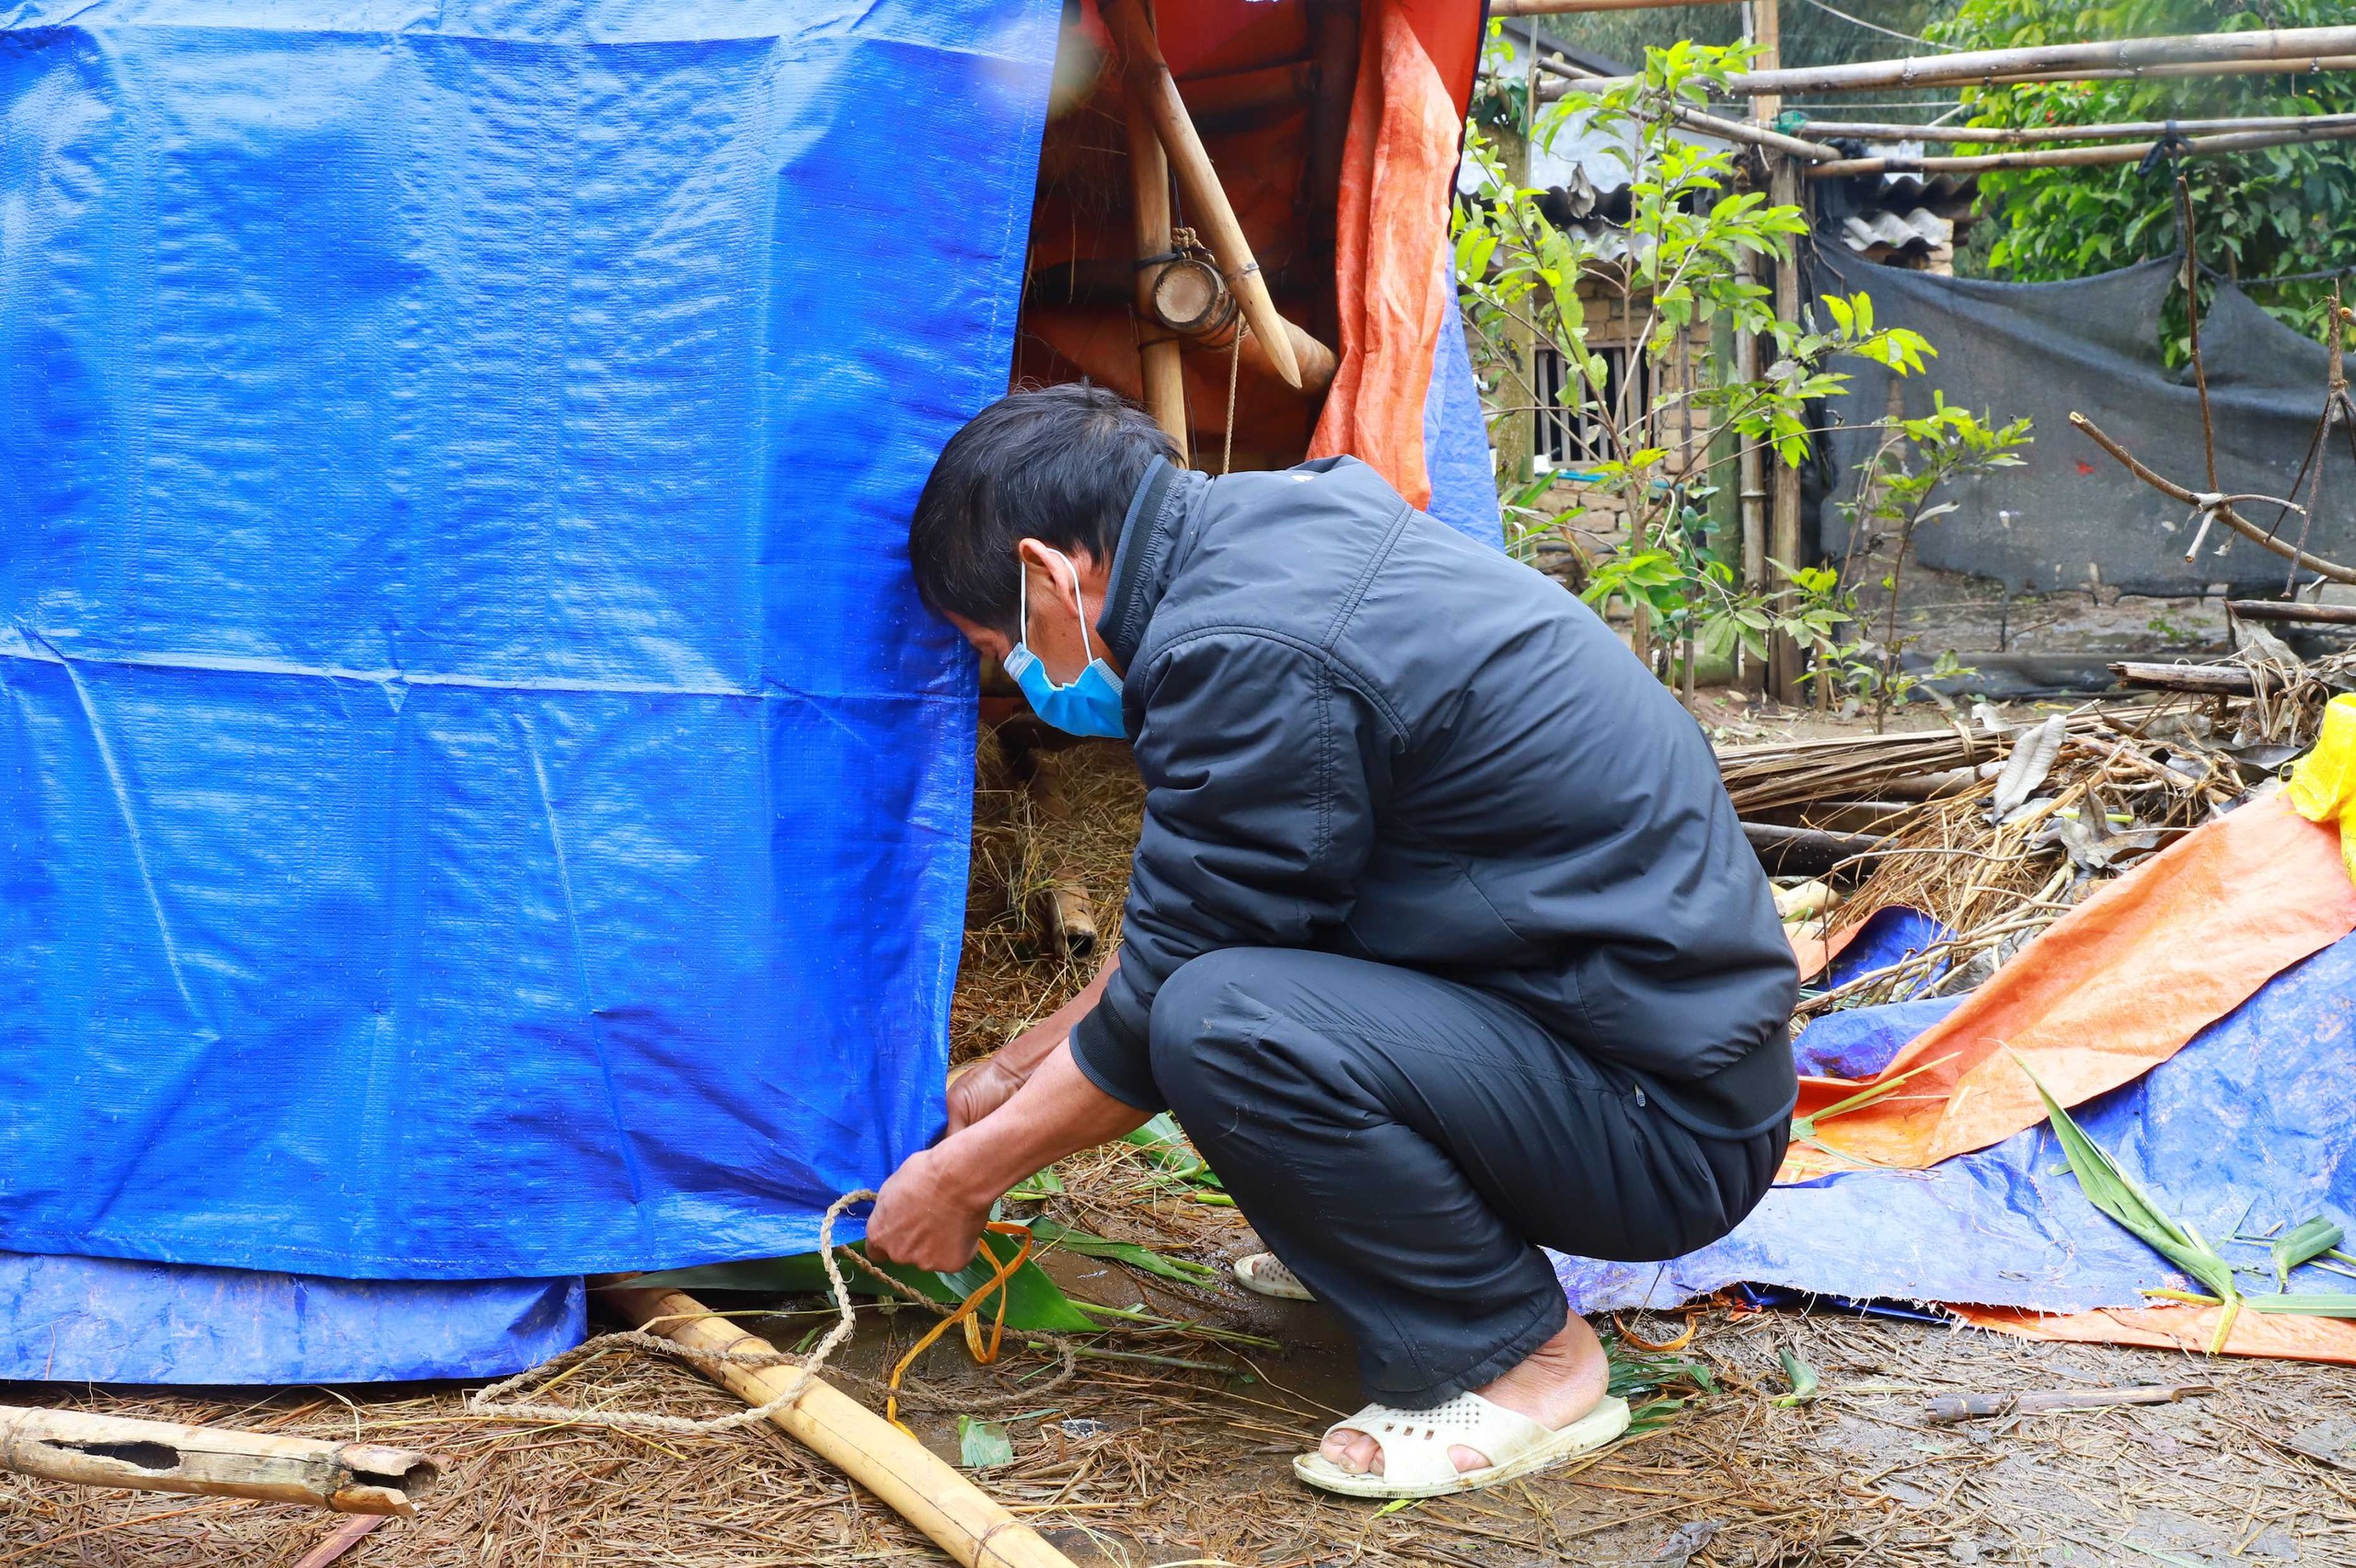 Rét đậm rét hại bao trùm, nông dân Quảng Ninh nghĩ cách bảo vệ "đầu cơ nghiệp"- Ảnh 2.